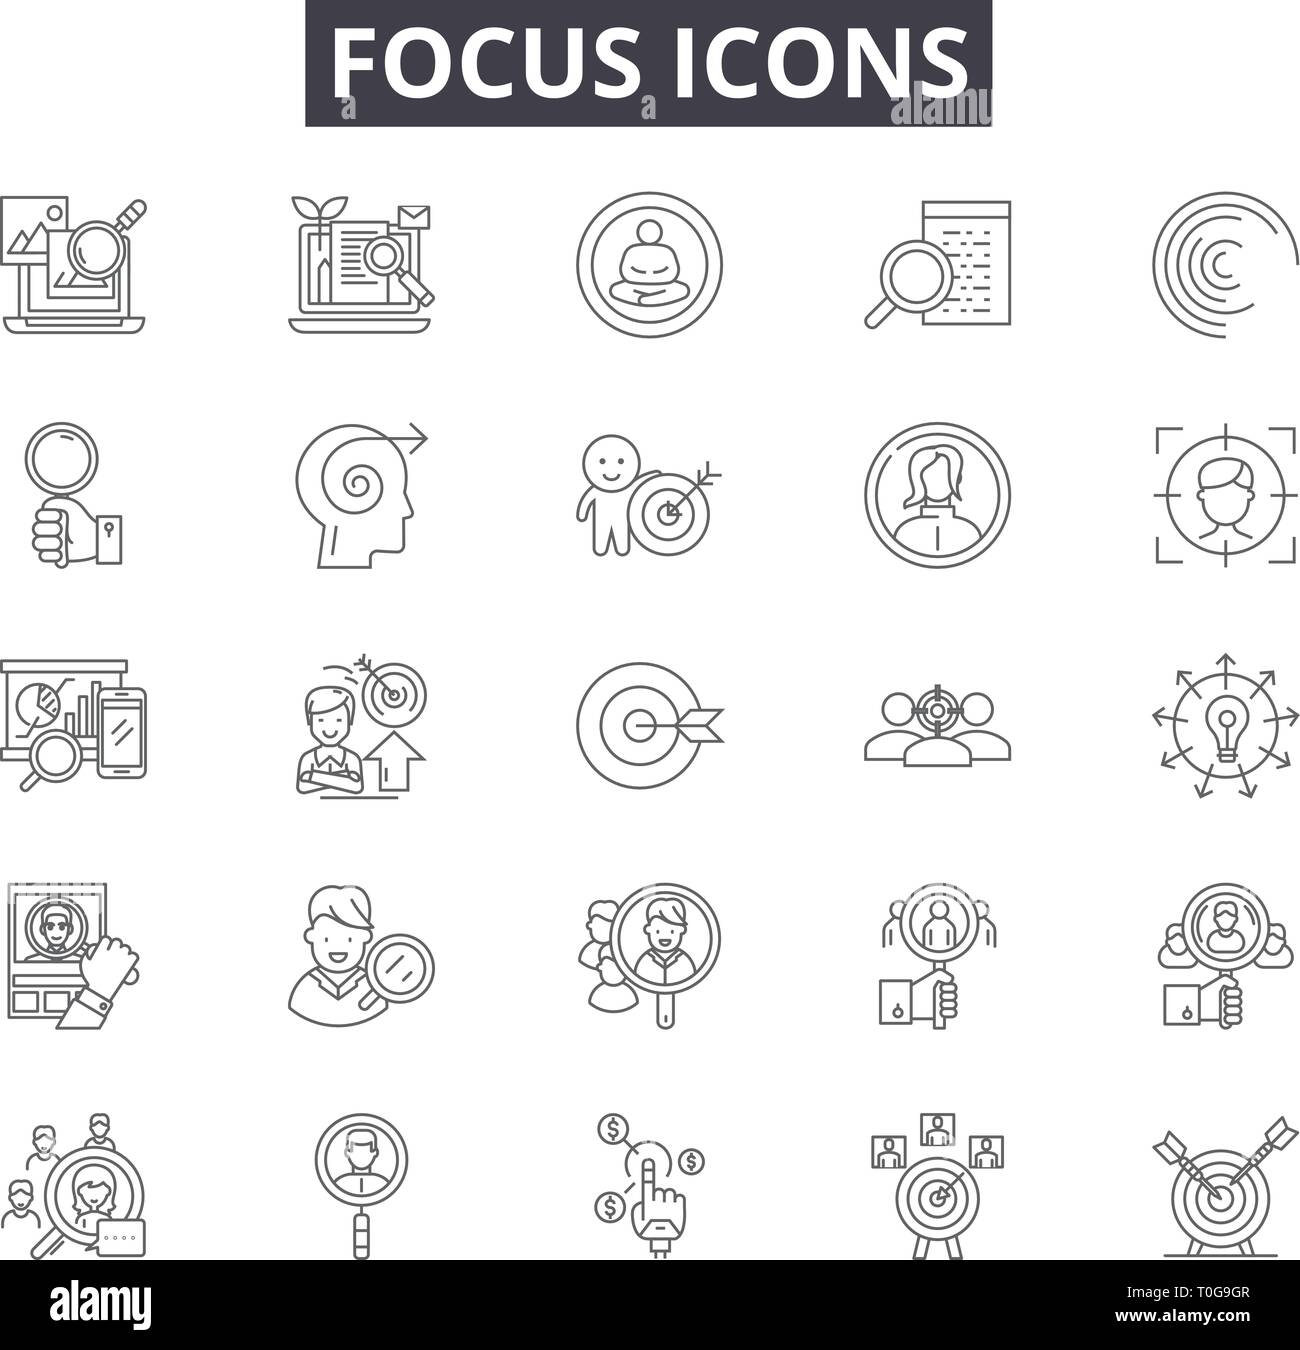 Línea de foco iconos para web y diseño móvil. Editable signos de